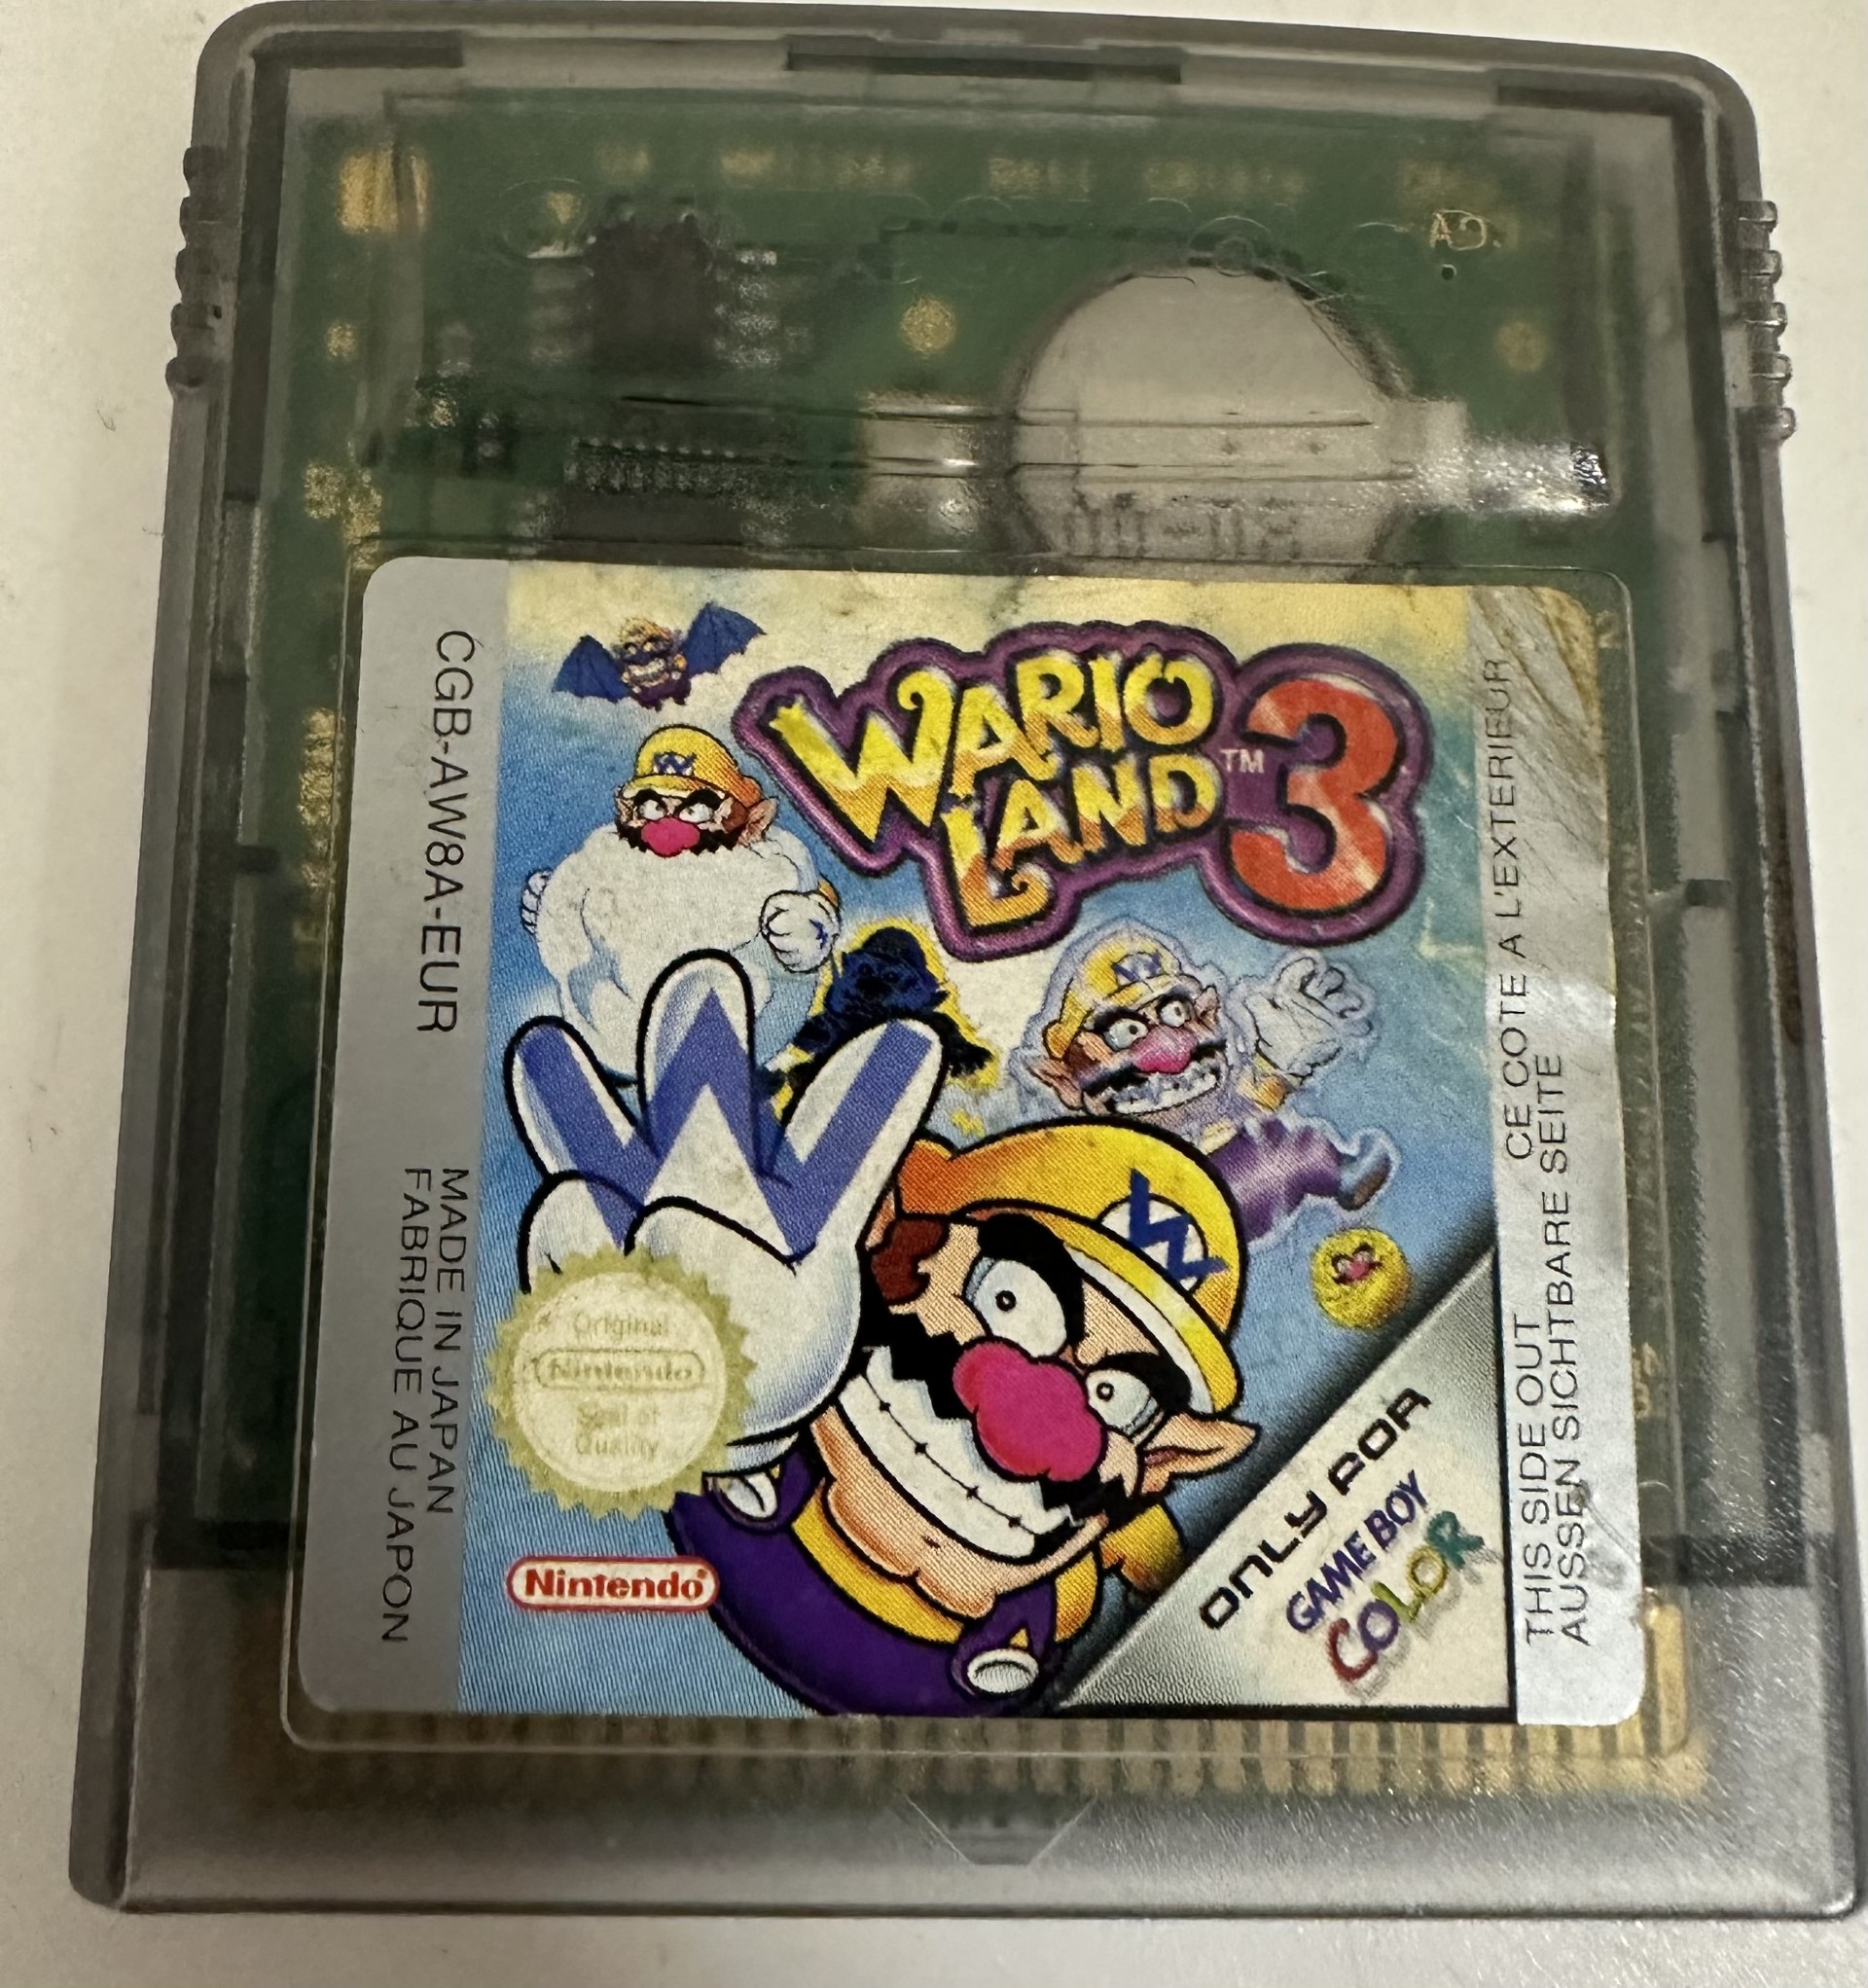 Nintendo Gameboy Color Wario land 3 Unboxed